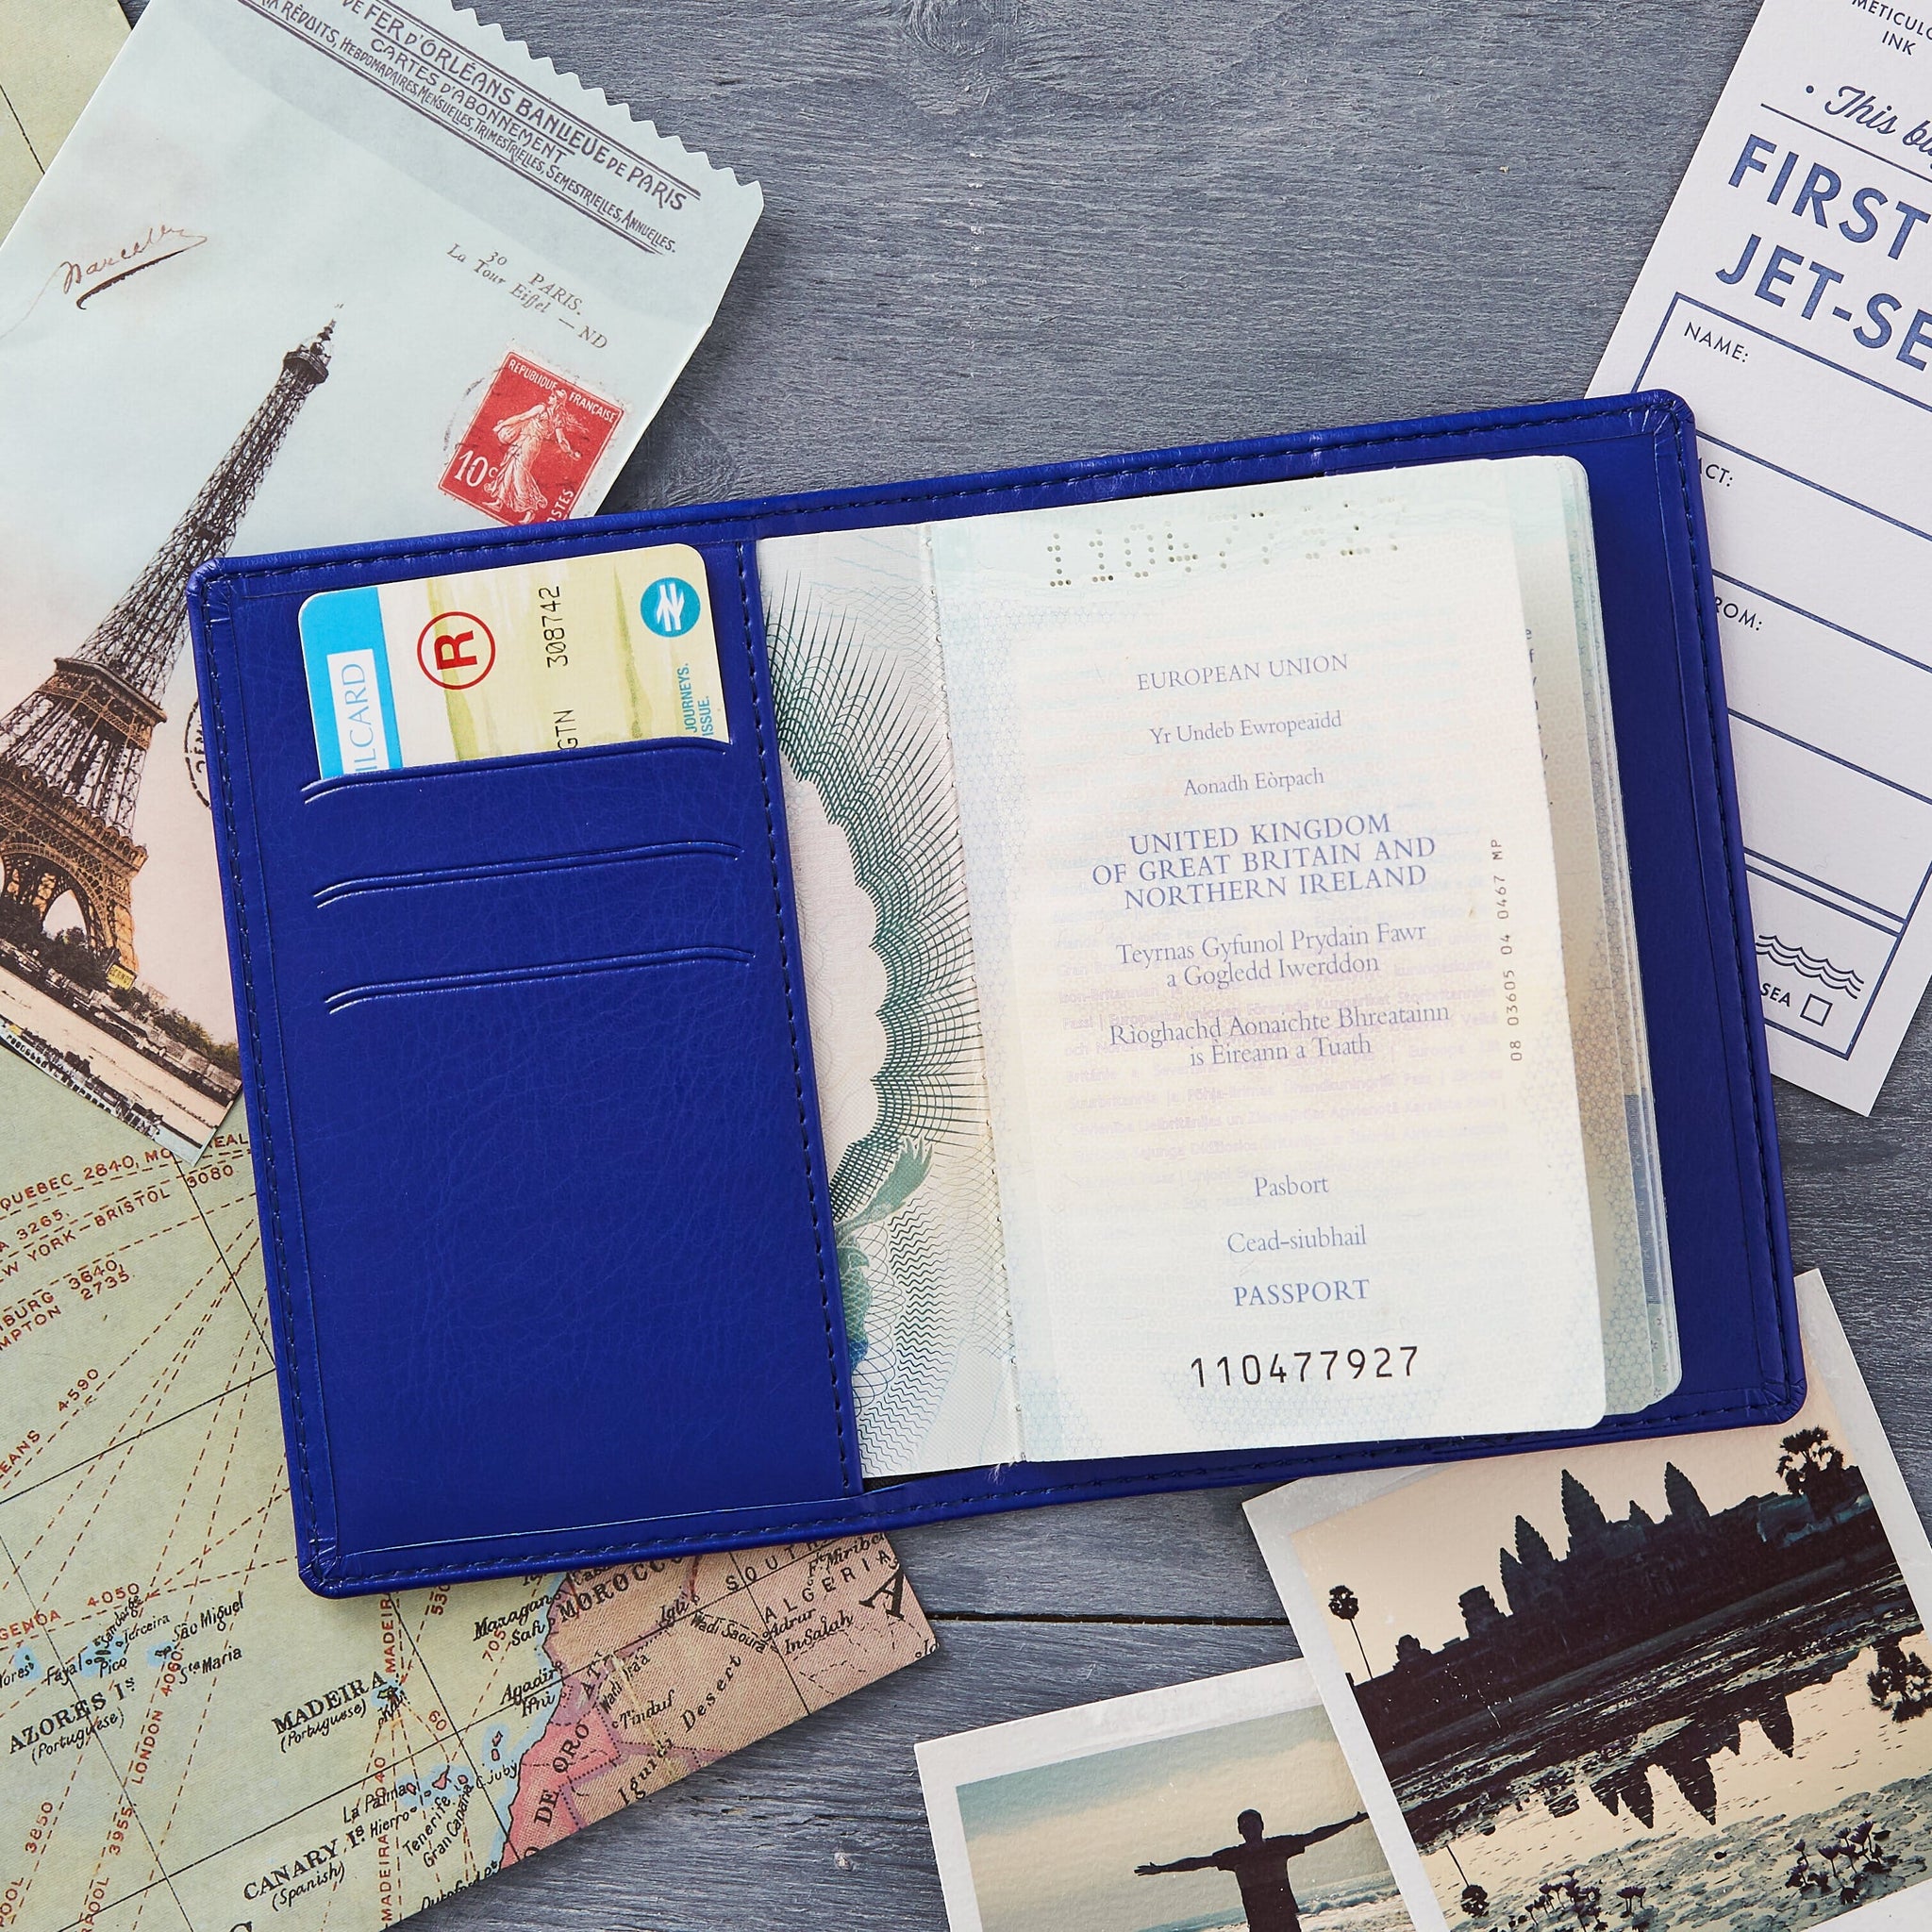 Louis Vuitton Passport Credit Card Wallet 3265